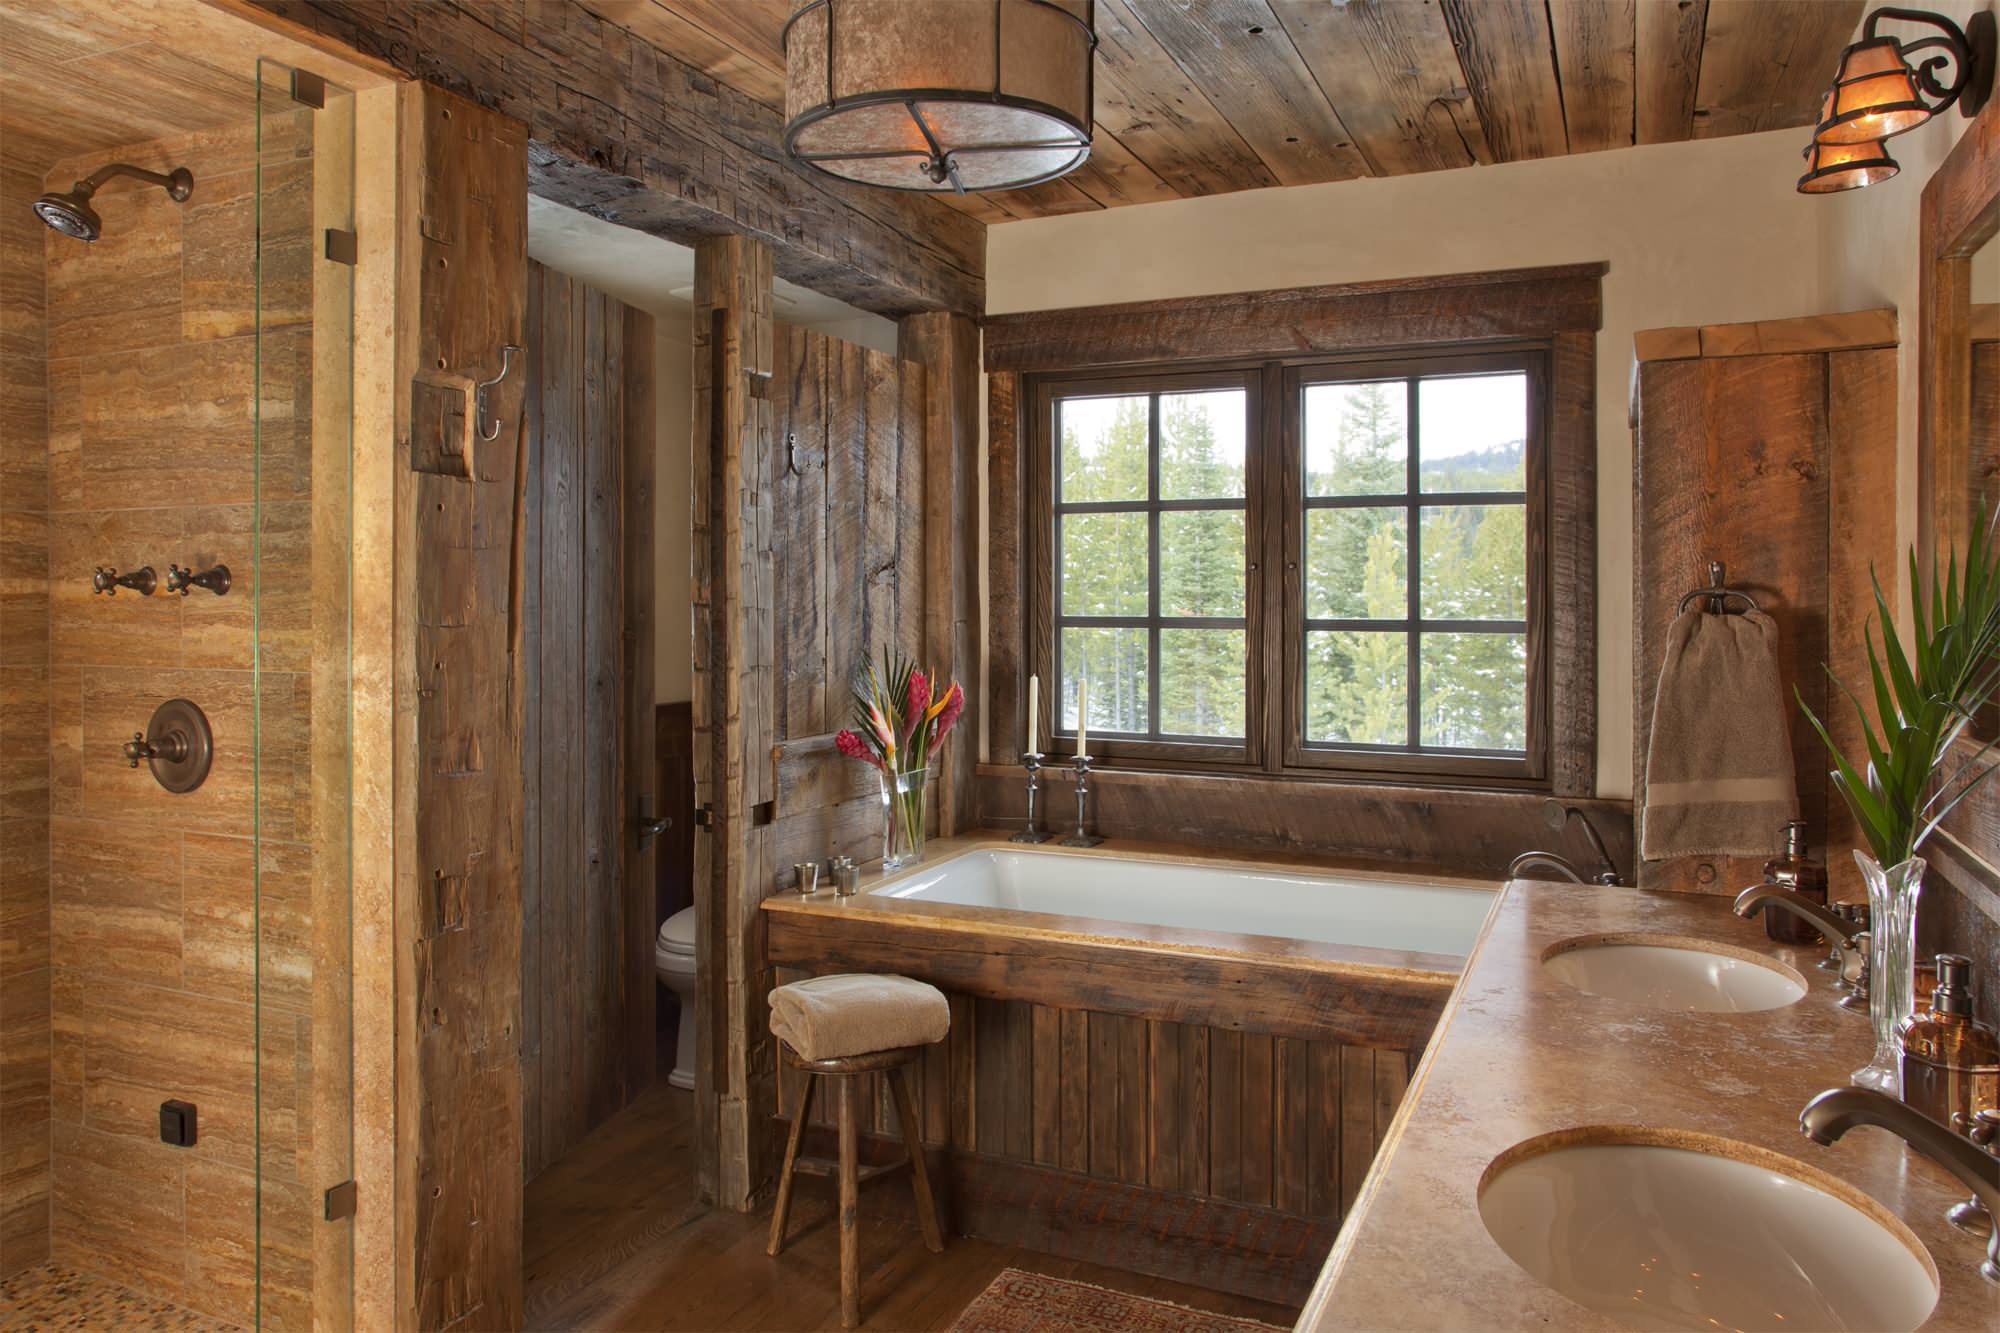 Отделка комнаты деревом. Ванная в деревянном стиле. Ванная в деревенском стиле. Ванная втжеревянном стиле. Ванная отделанная деревом.